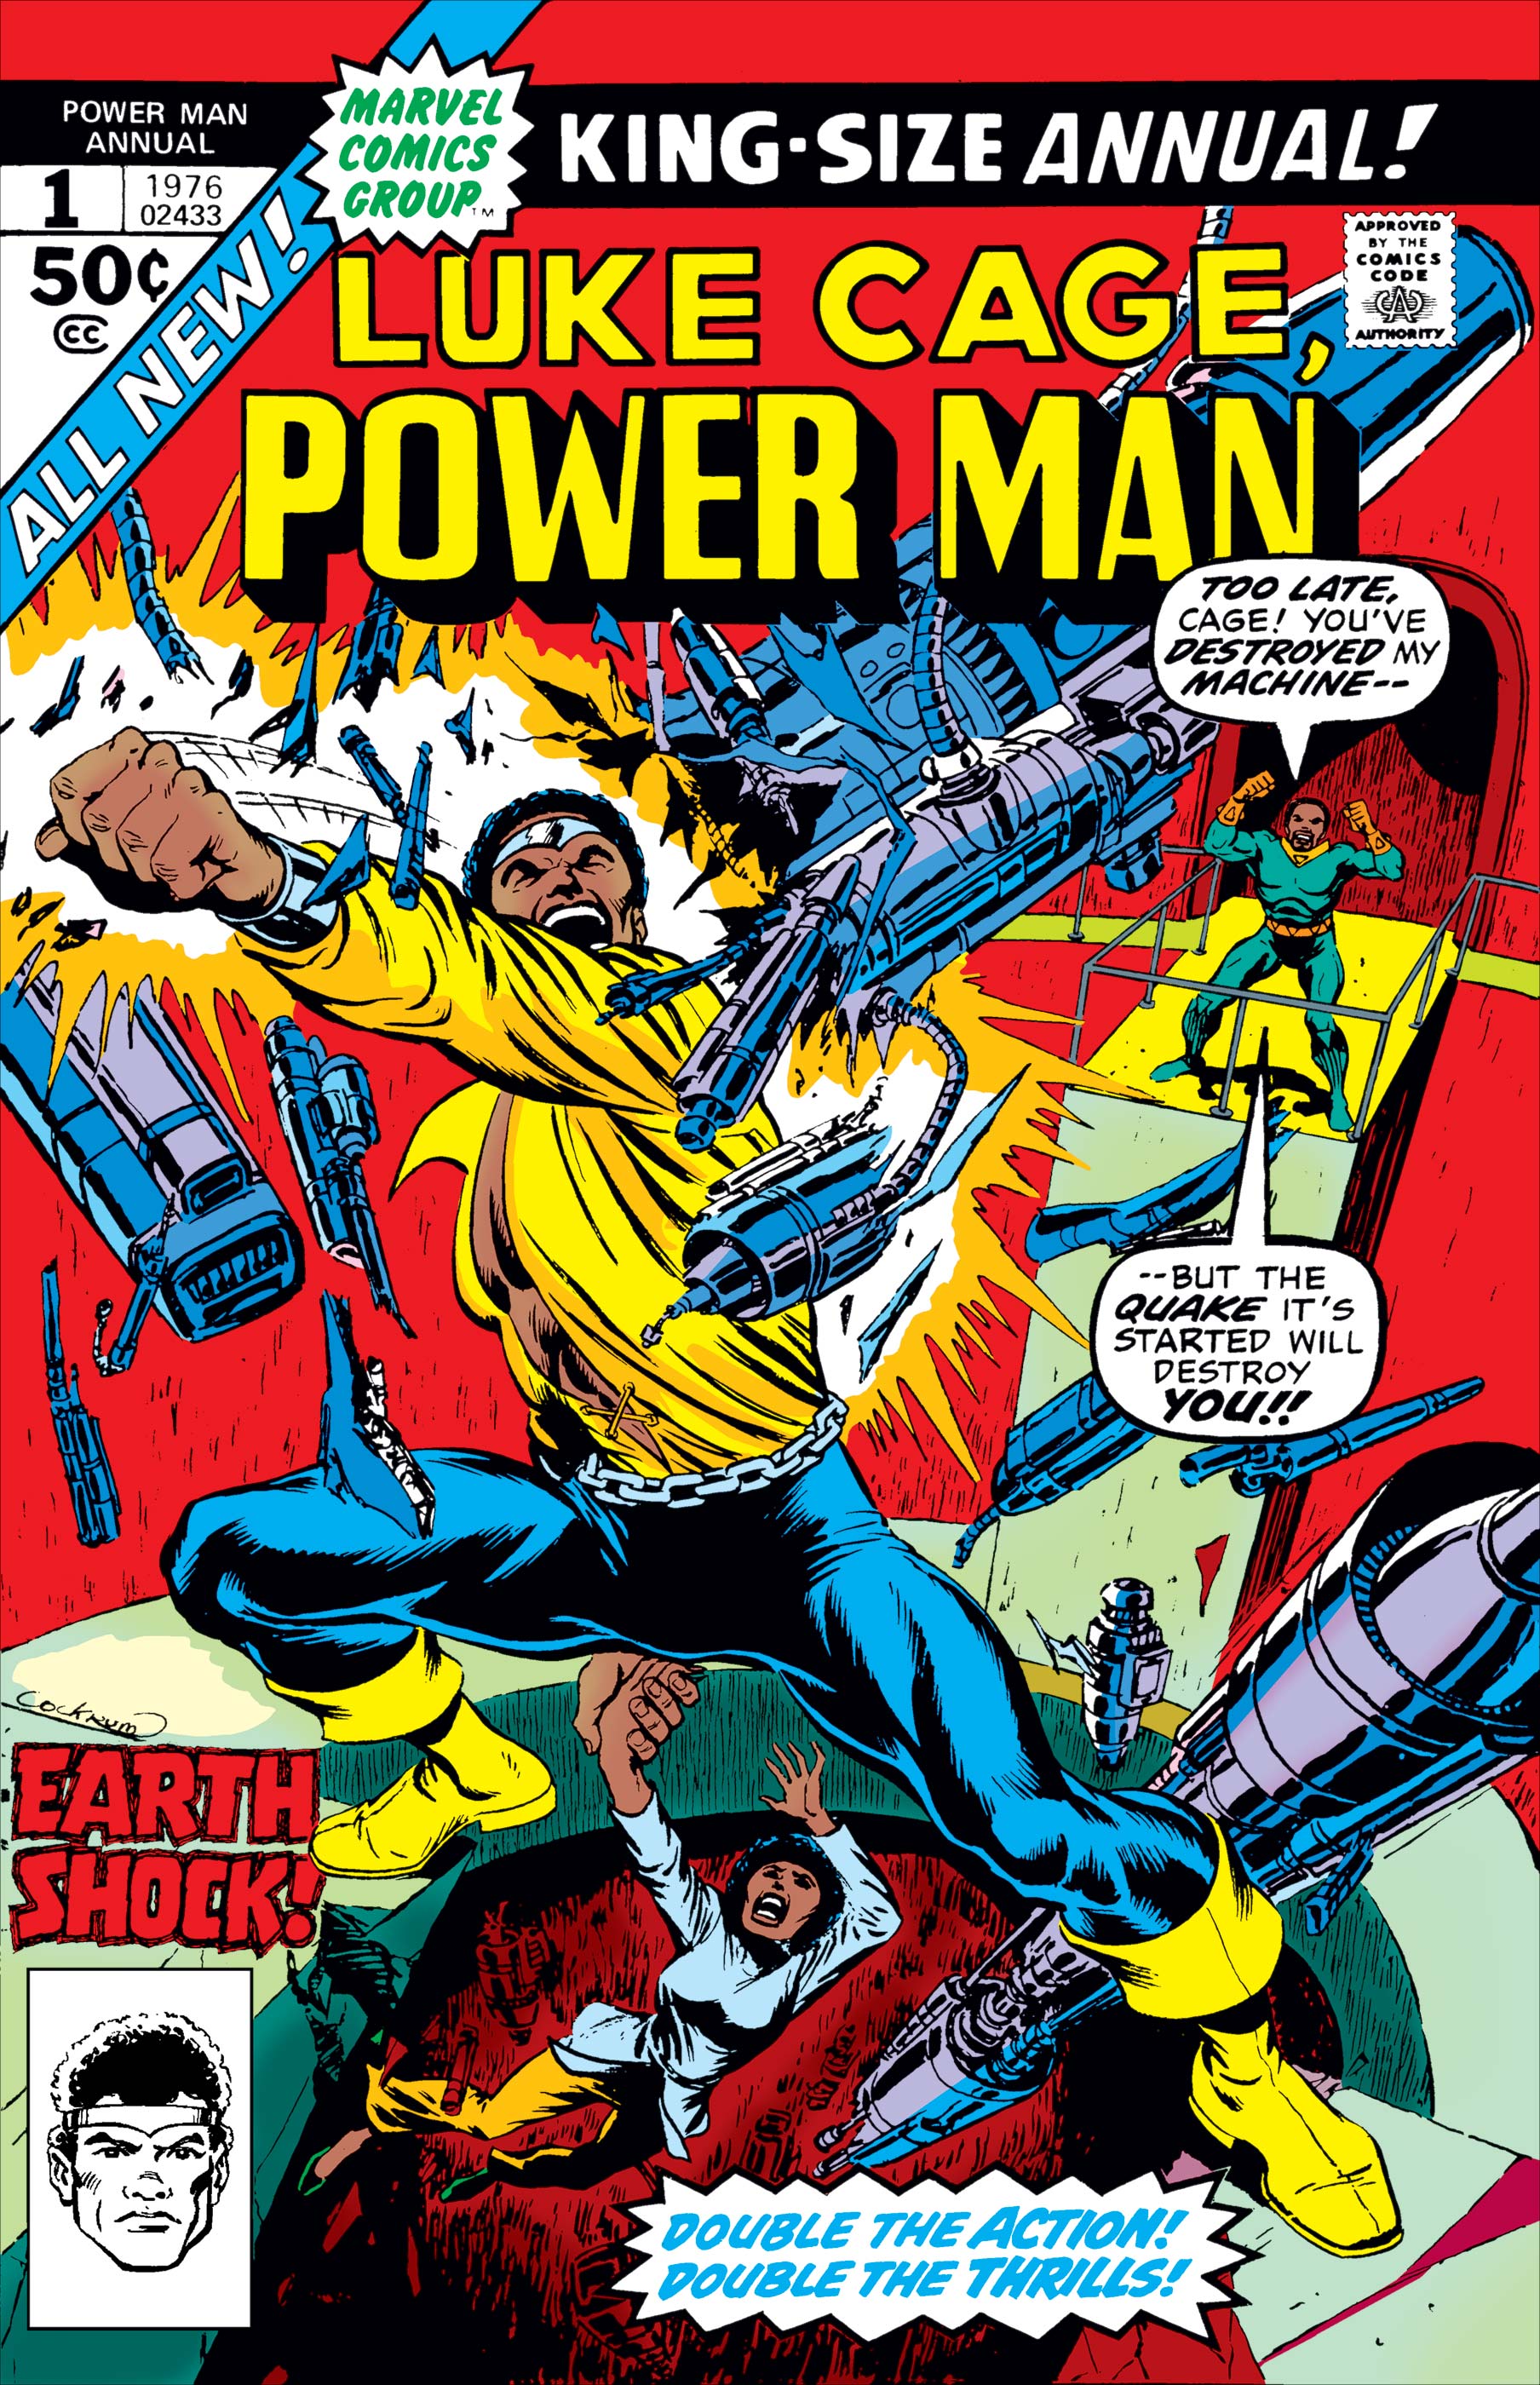 Power Man Annual (1976) #1